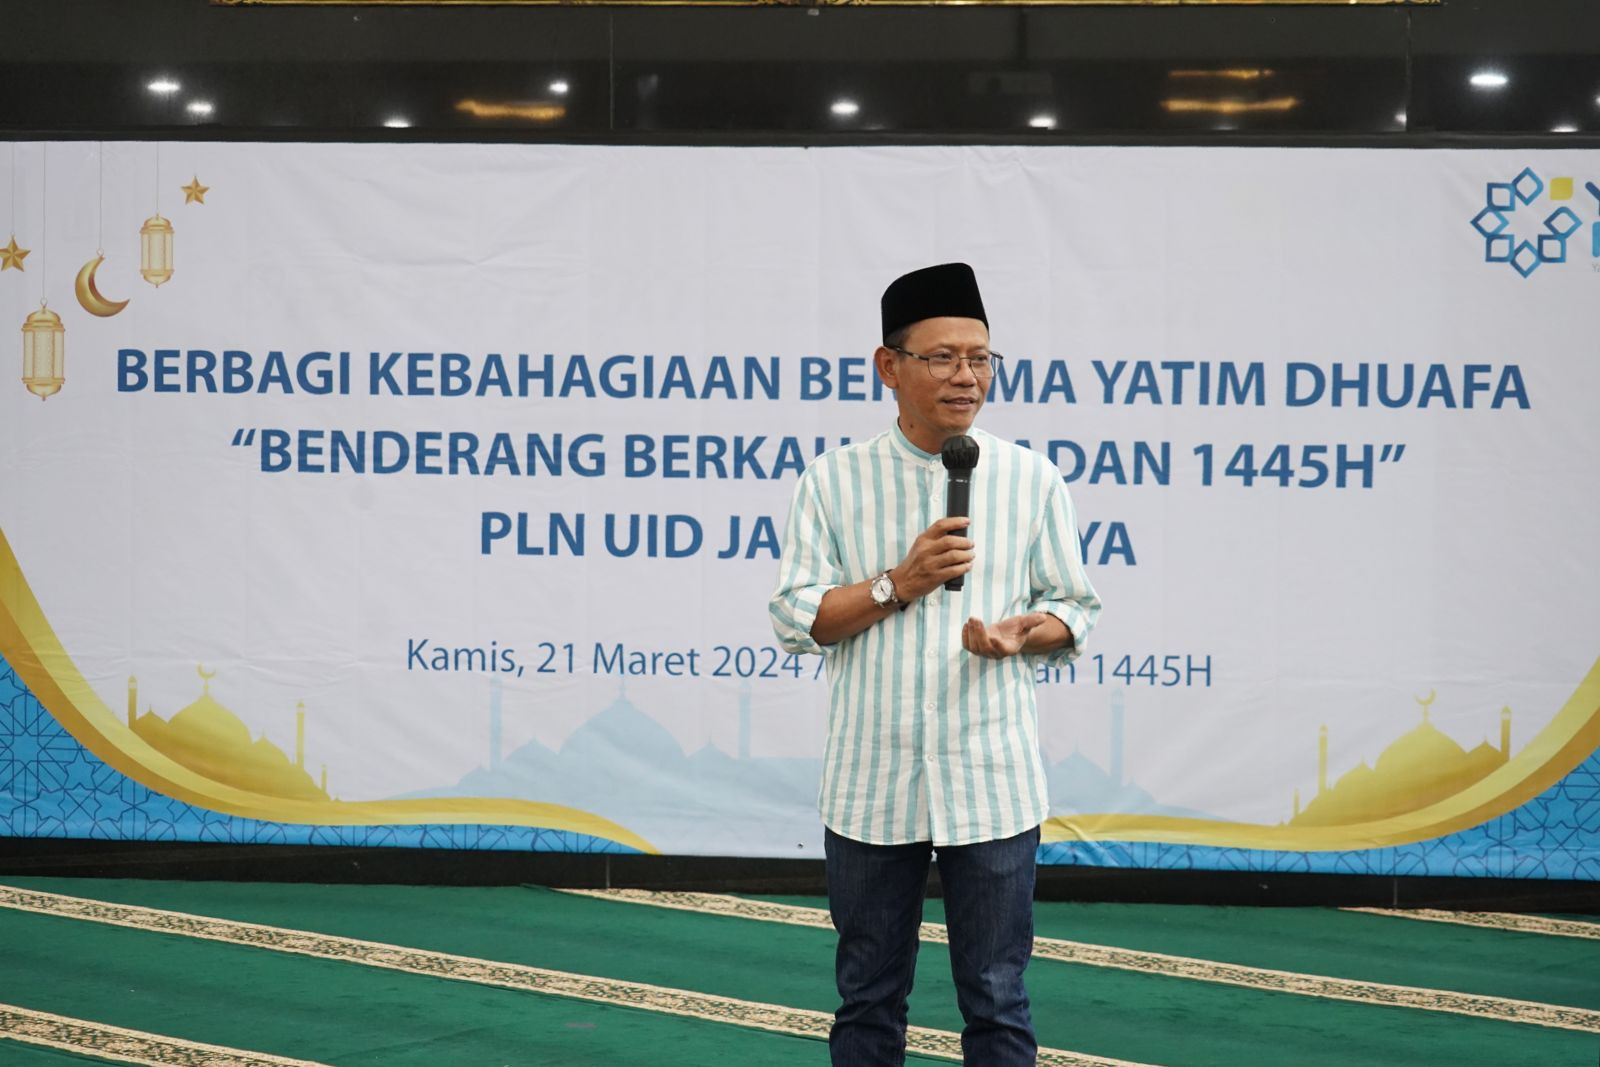 YBM PLN UID Jakarta Raya Berbagi Berkah Ramadhan Bersama Anak Yatim dan Dhuafa